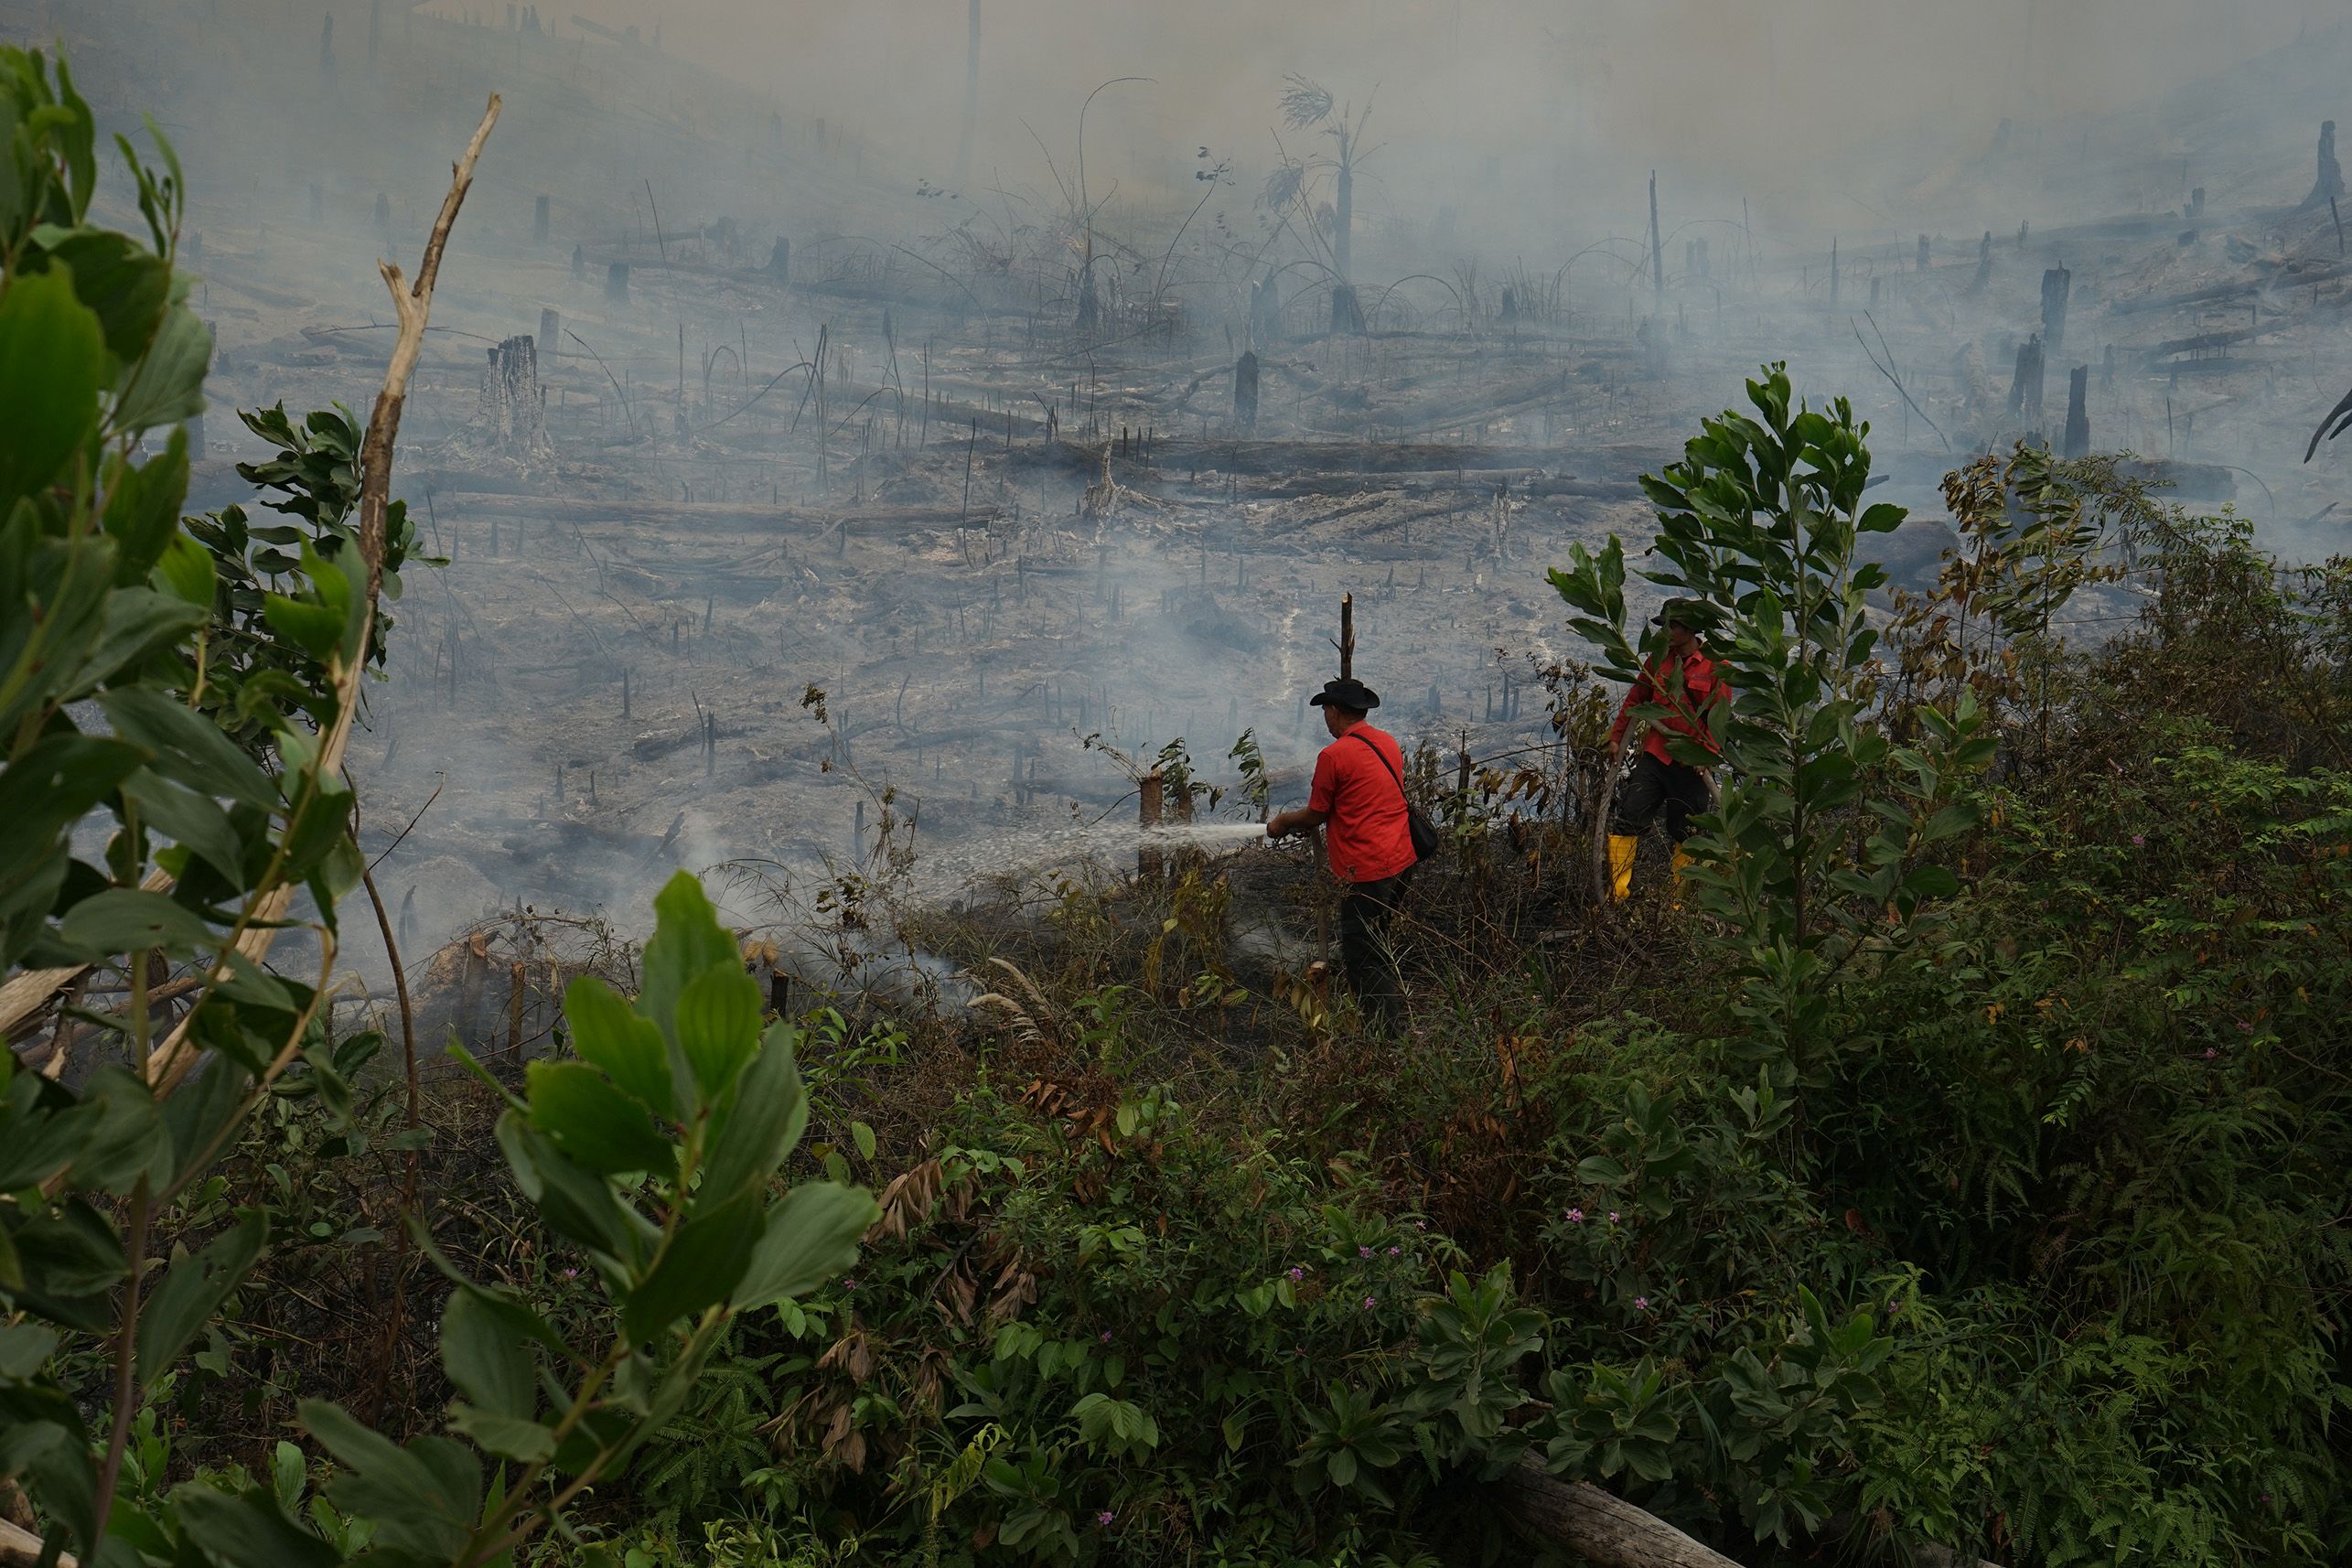 Petugas Pemadam Kebakaran berupaya memadamkan kebakaran di dekat kawasan hutan tanaman